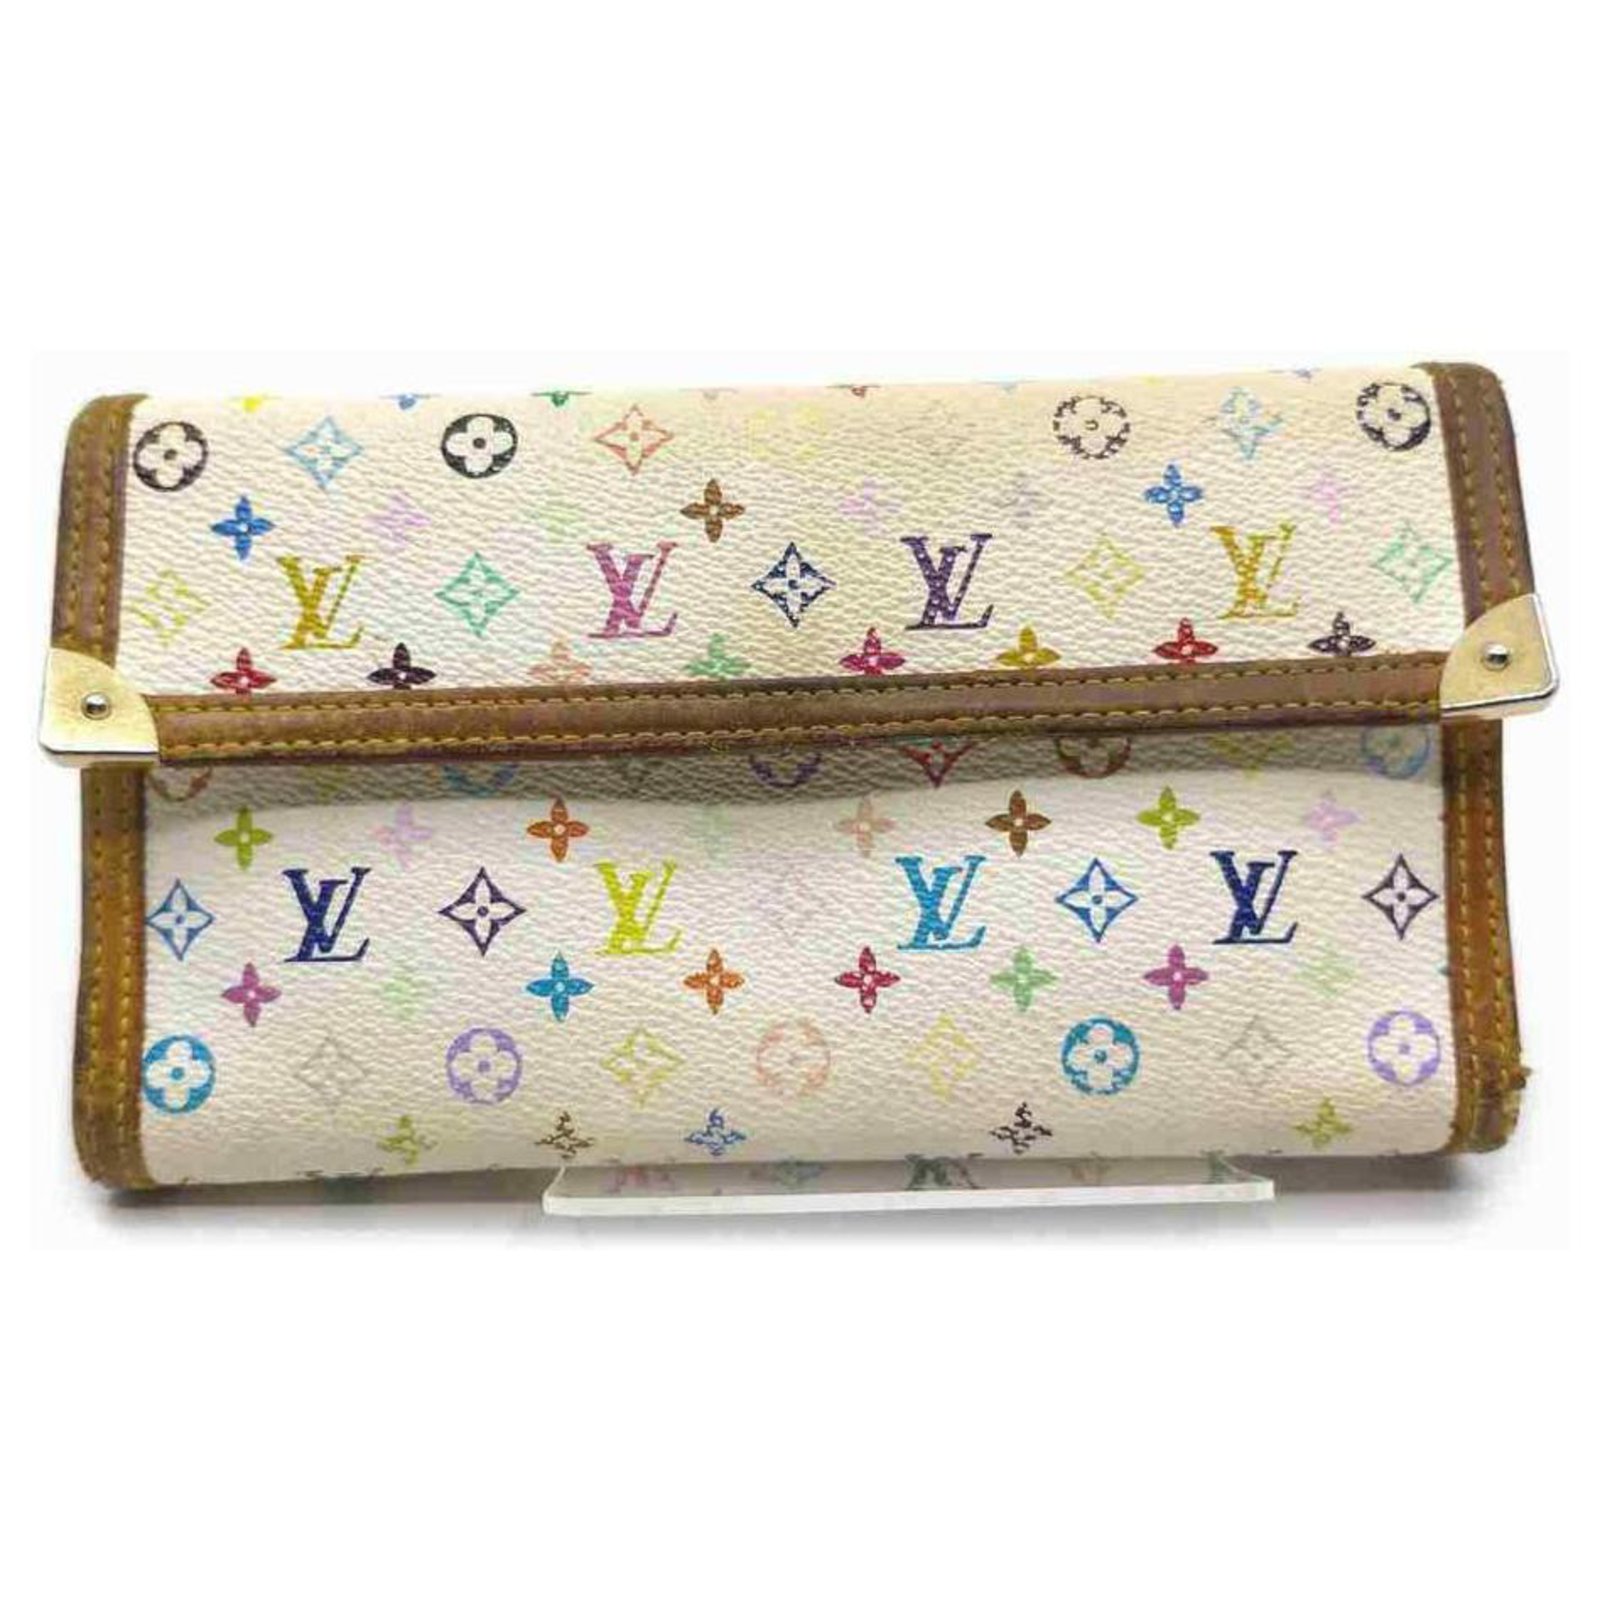 Louis Vuitton PORTEFEUILLE SARAH Sarah wallet (M61182)